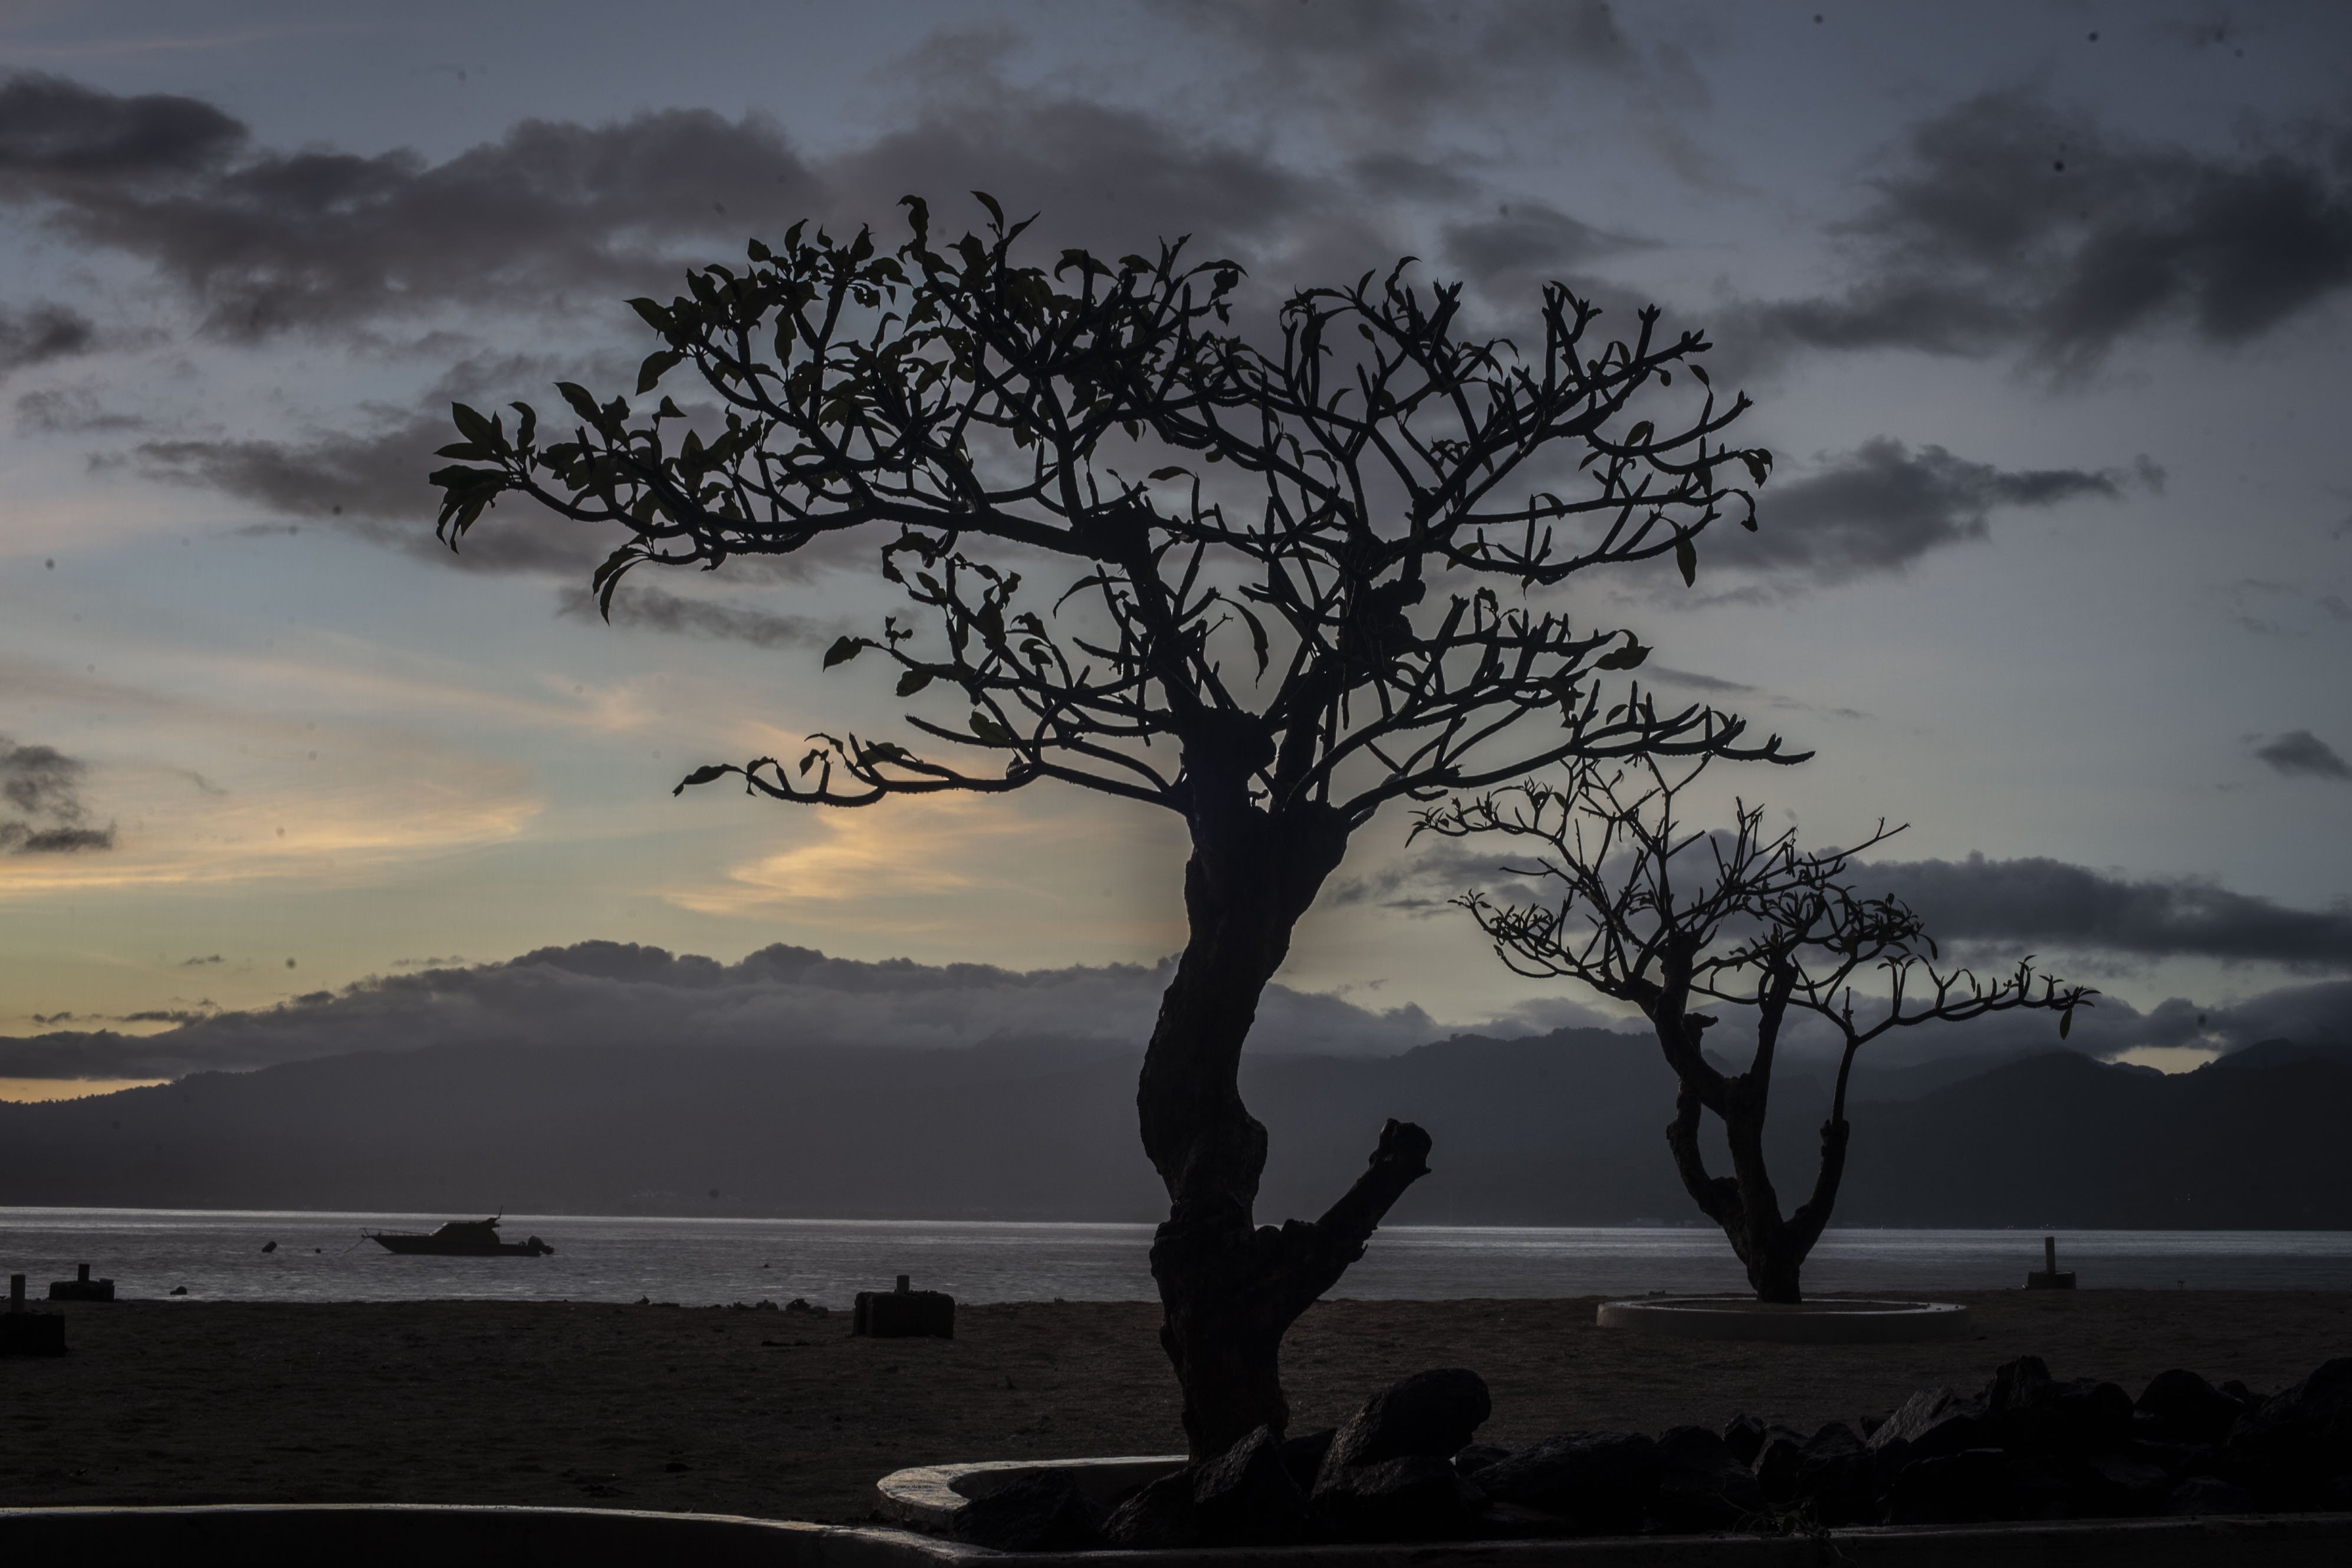 Suasana matahari terbit di Gili Trawangan, Kepulauan Gili, Lombok Utara, Nusa Tenggara Barat, Sabtu (6/3/2021). Kepulauan Gili merupakan salah satu destinasi wisata keunggulan Lombok yang terdiri dari tiga pulau, yaitu Gili Trawangan, Meno, dan Air. ANTARA FOTO/Aprillio Akbar/aww.